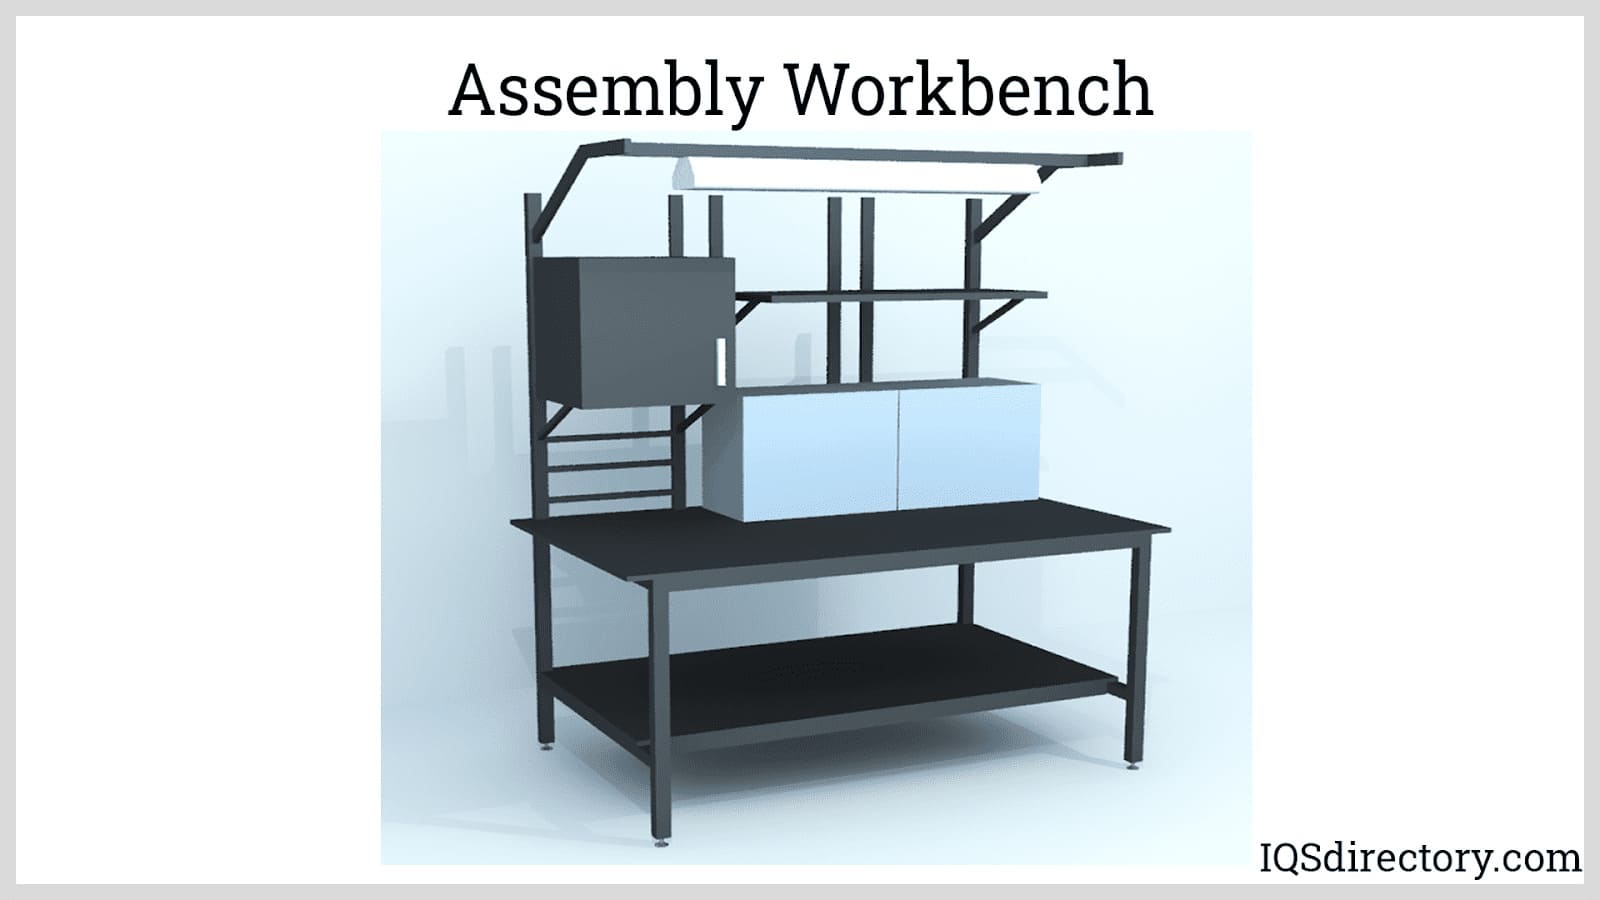 Assembly Workbench